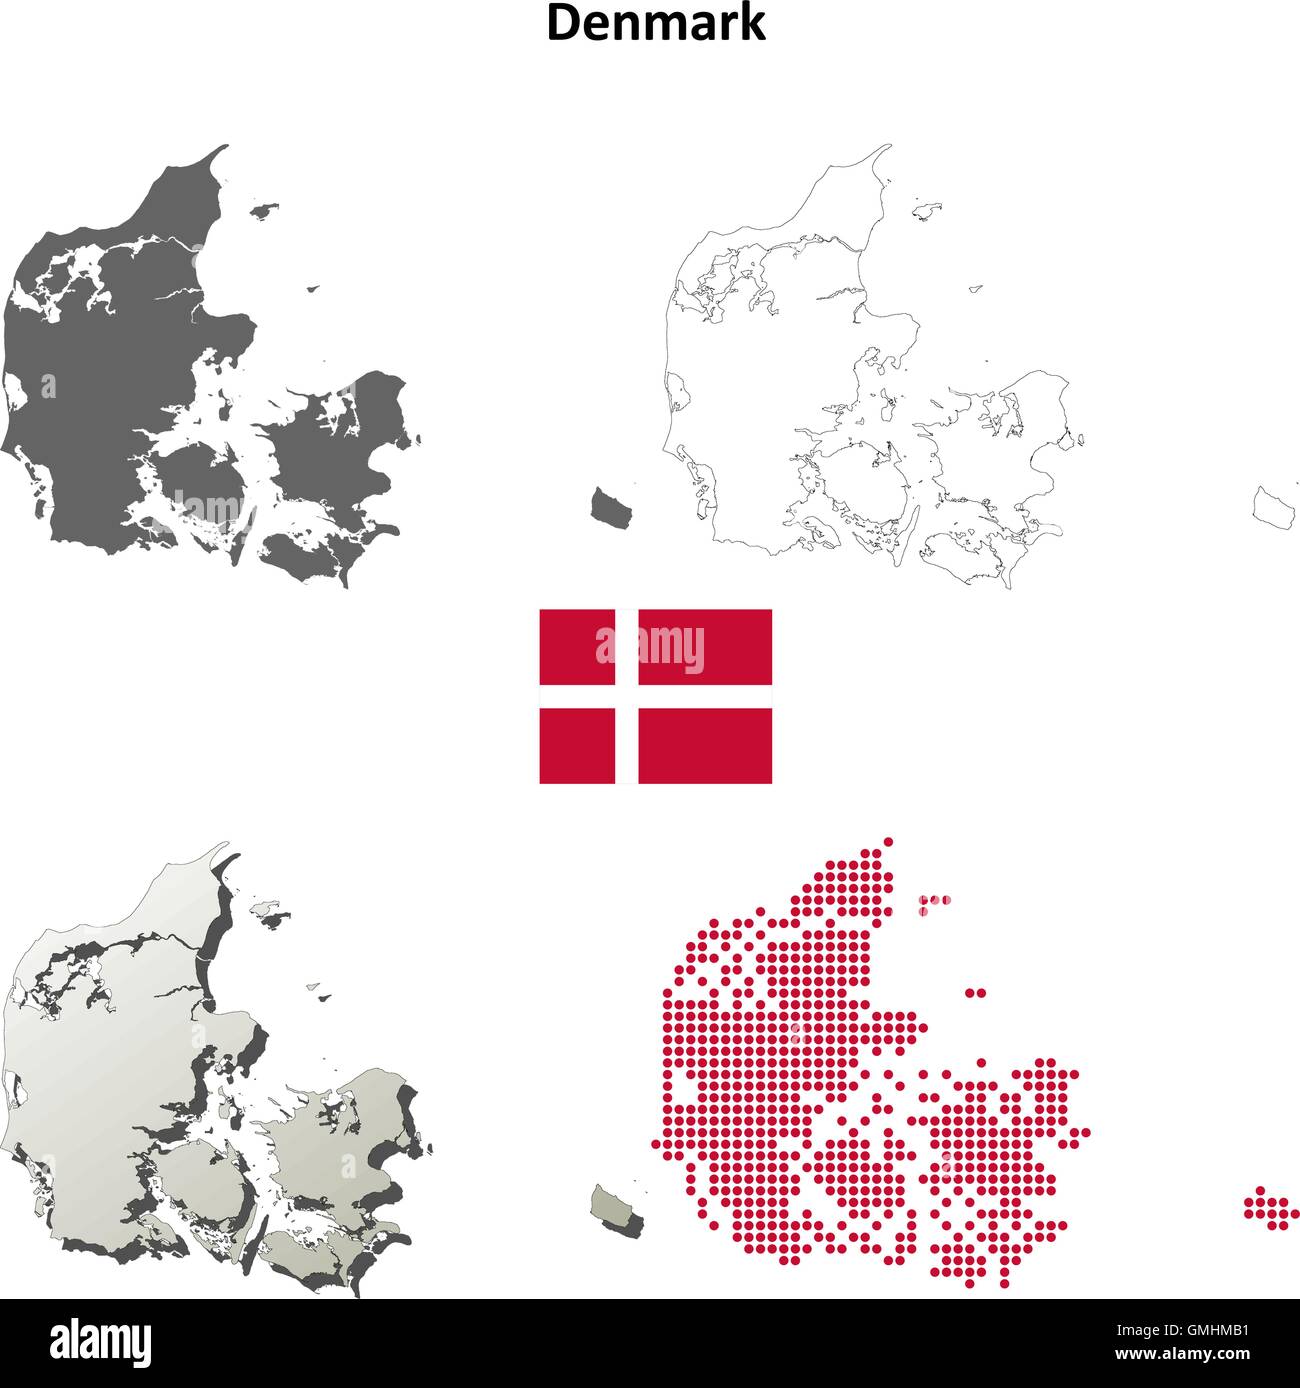 Denmark outline map set Stock Vector